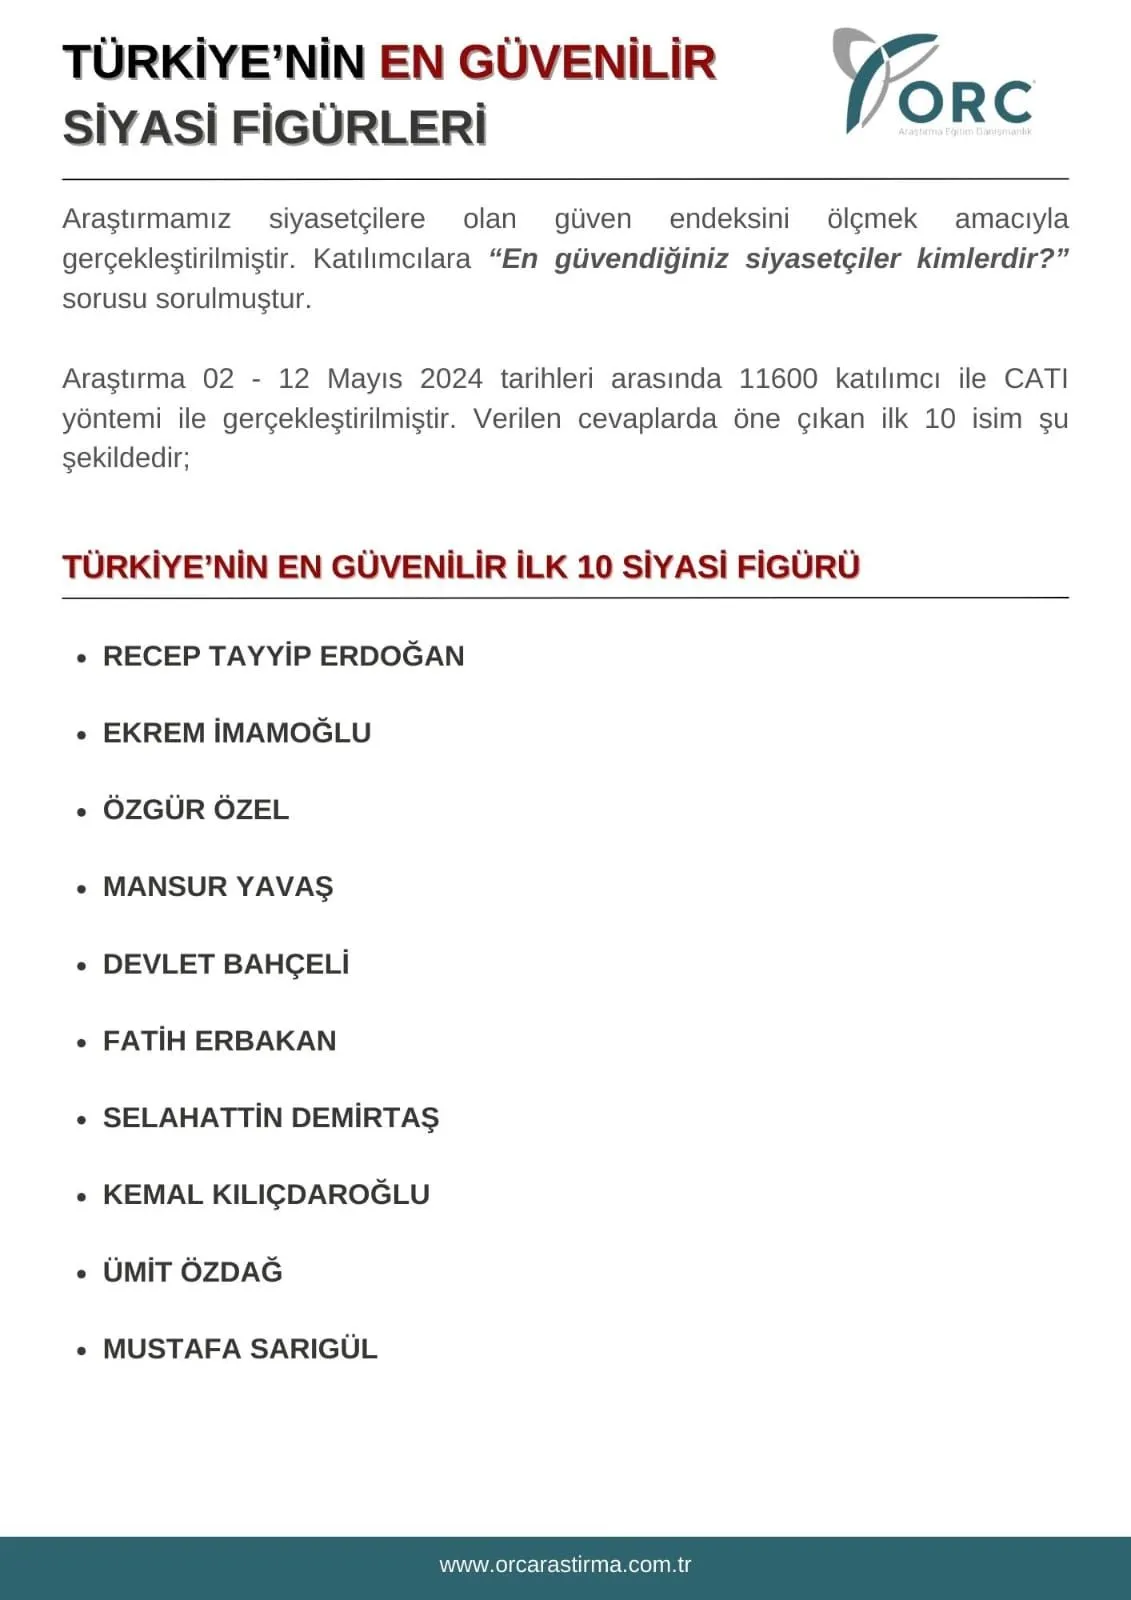 Türkiye'nin en güvenilir siyasetçileri anketi: 42 yıl ceza verilen Demirtaş listede